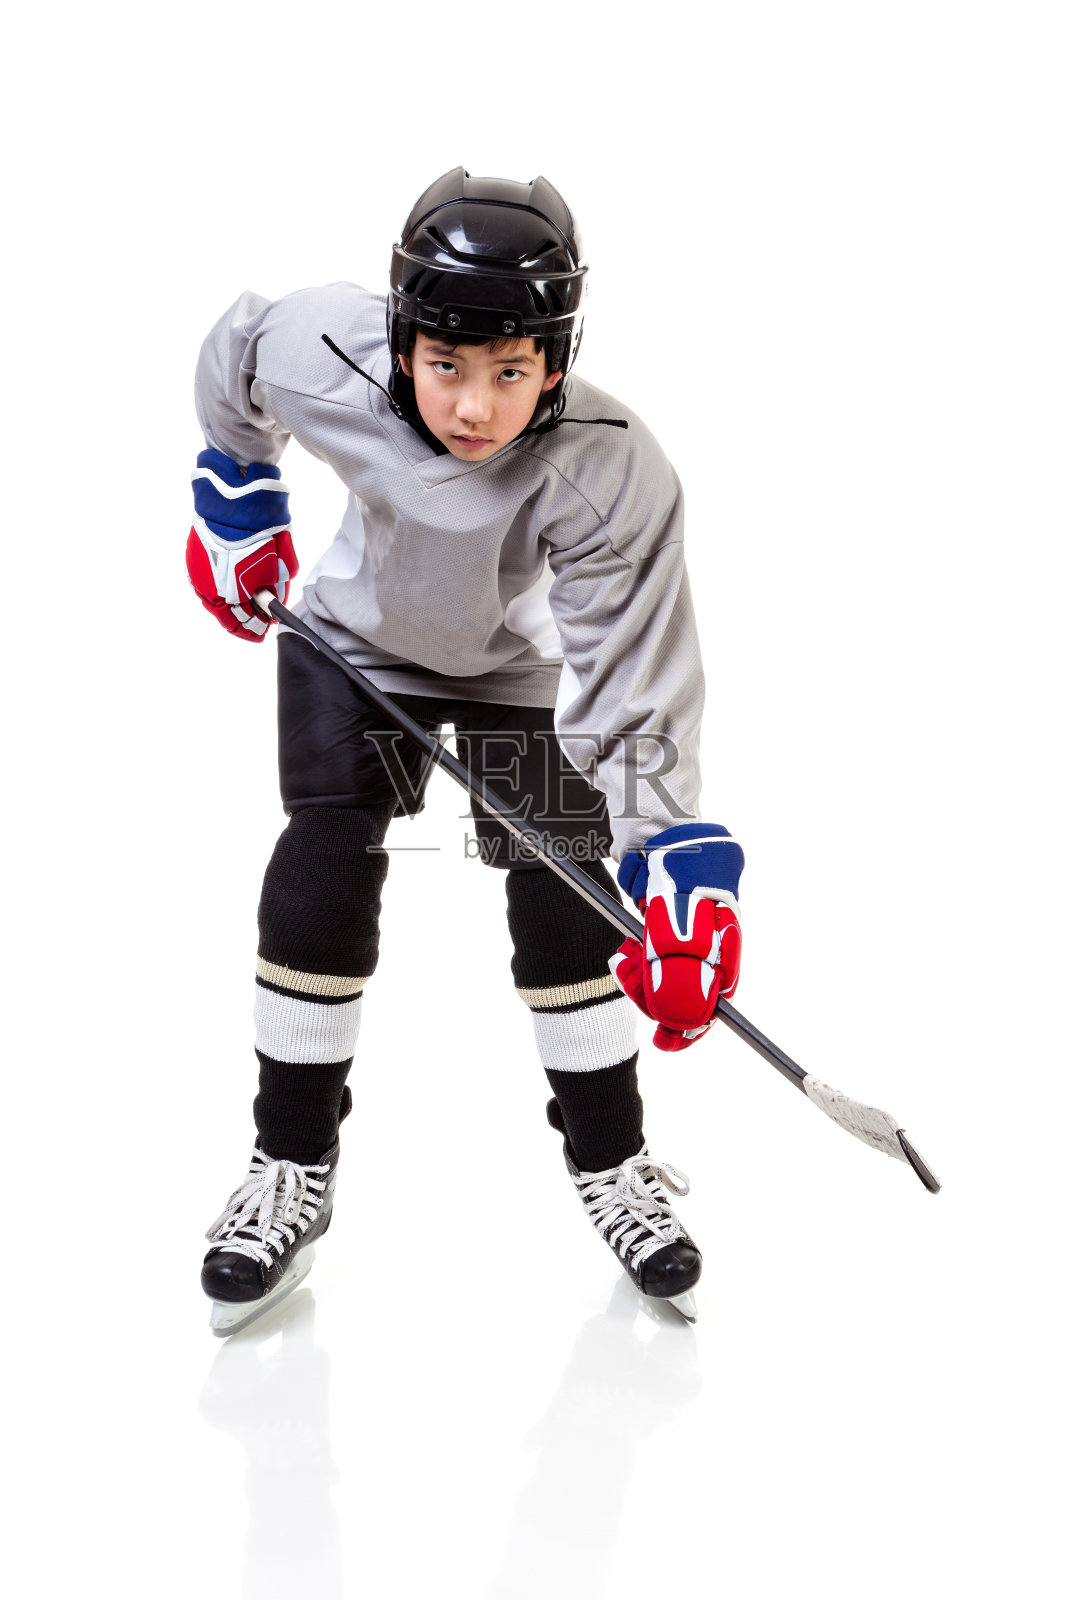 少年冰球运动员孤立在白色背景照片摄影图片